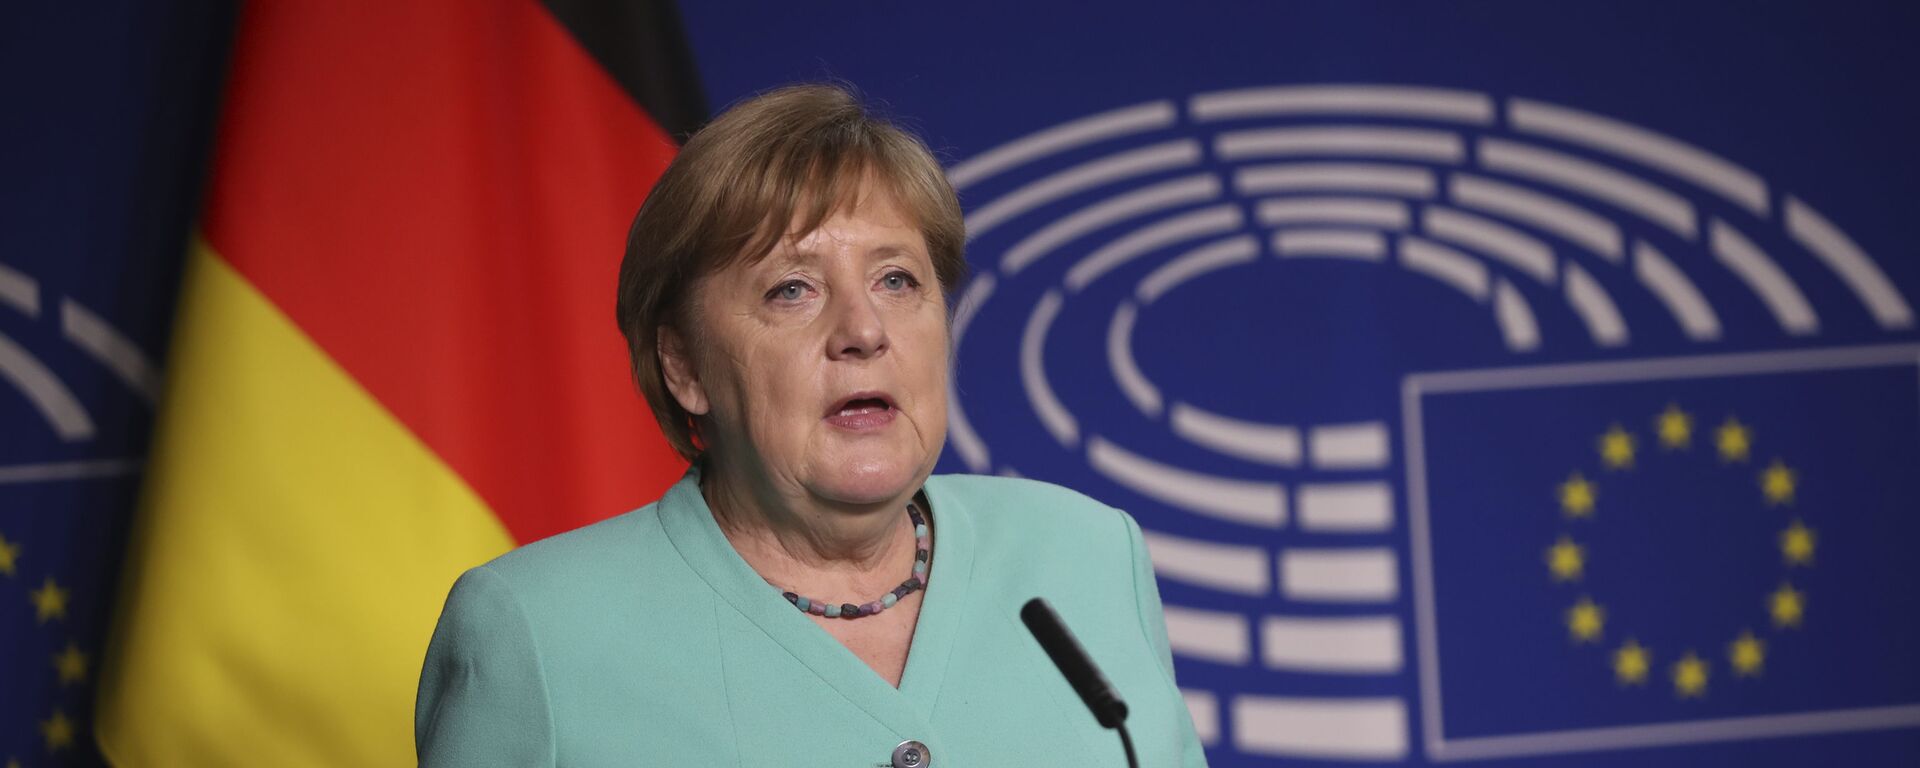 Канцлер Германии Ангела Меркель выступает в Европарламенте в Брюсселе - Sputnik Латвия, 1920, 05.09.2021